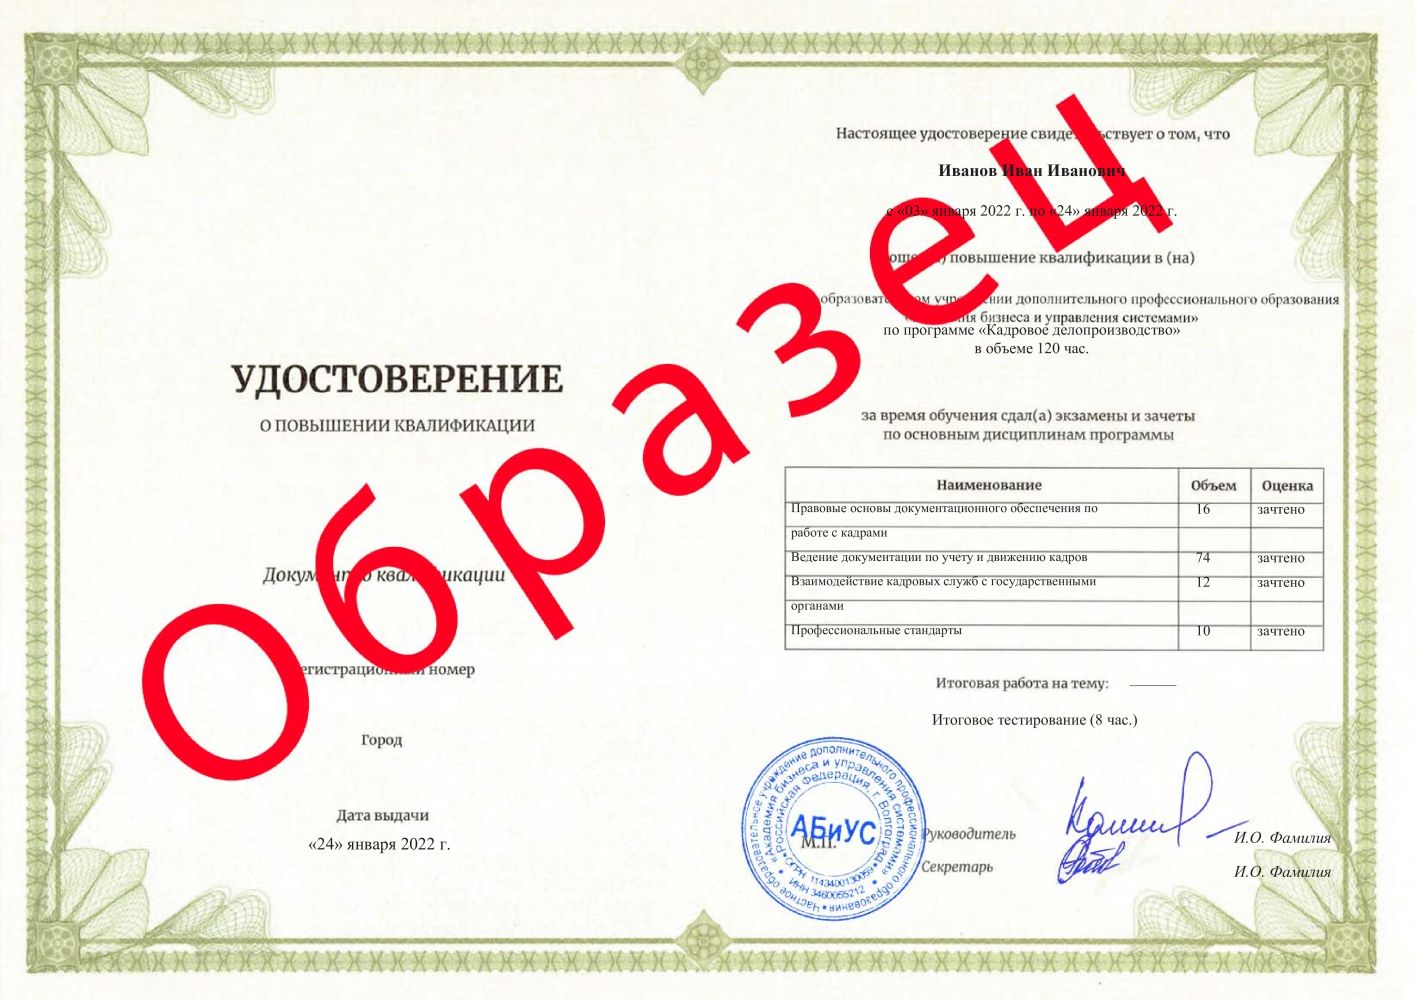 Удостоверение Кадровое делопроизводство 120 часов 6313 руб.